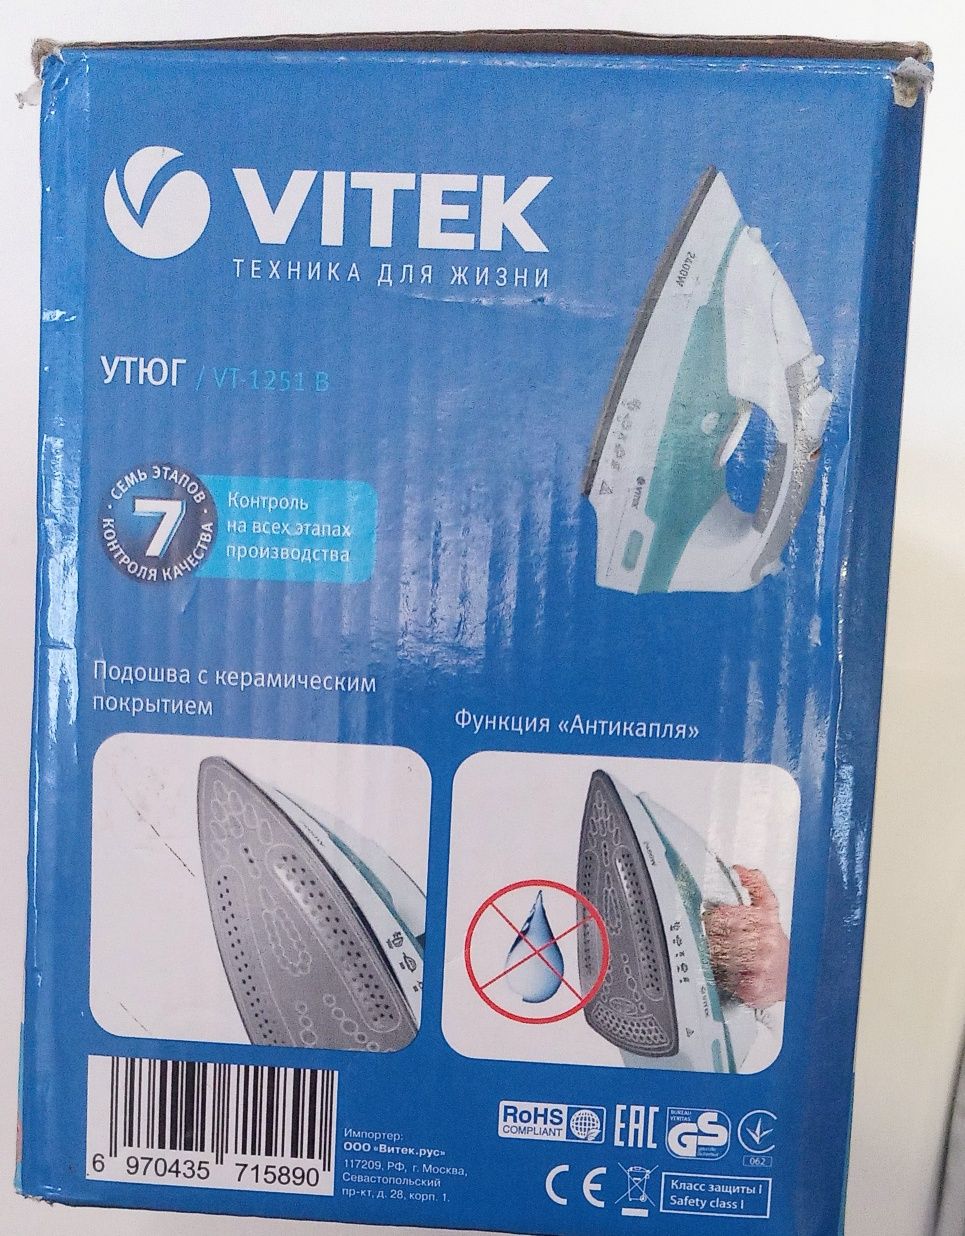 Утюг Vitek VT-1251 B. Новый. 2400 Вт.